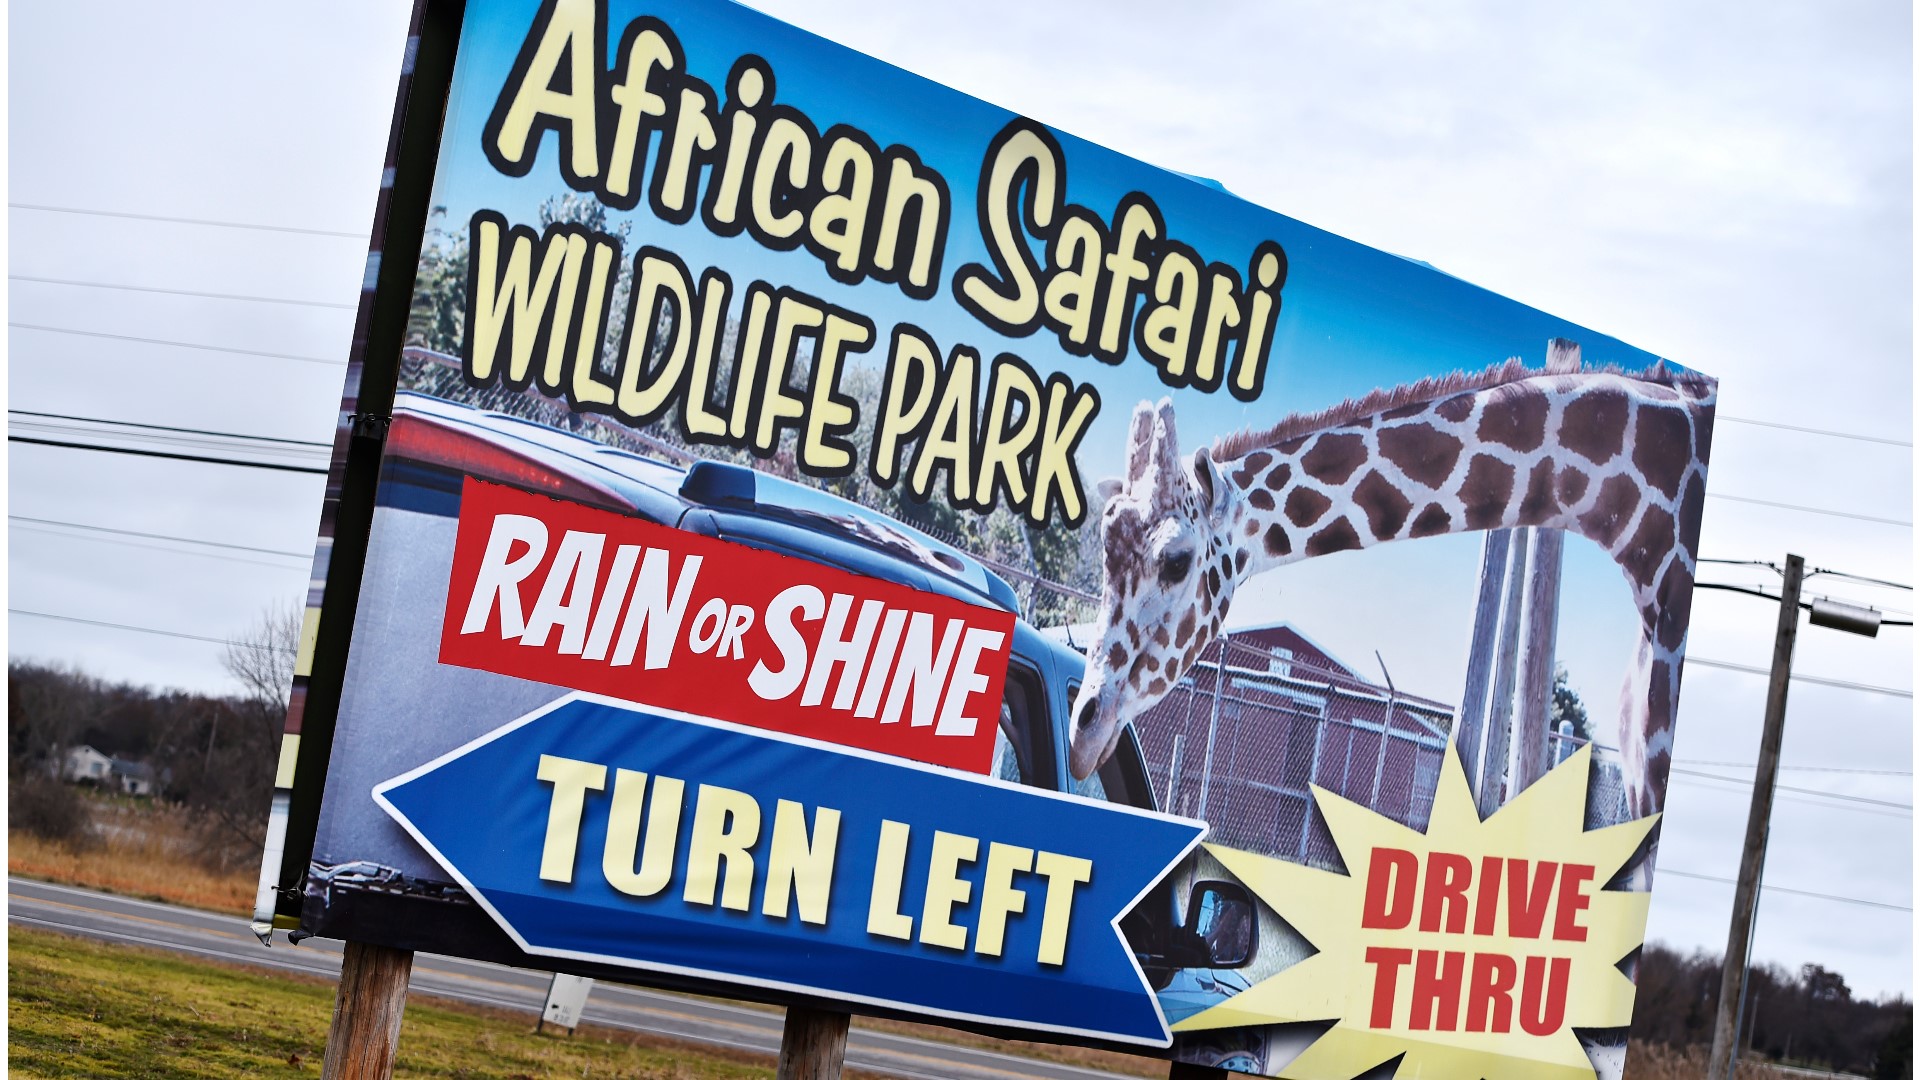 african safari wildlife park donation request